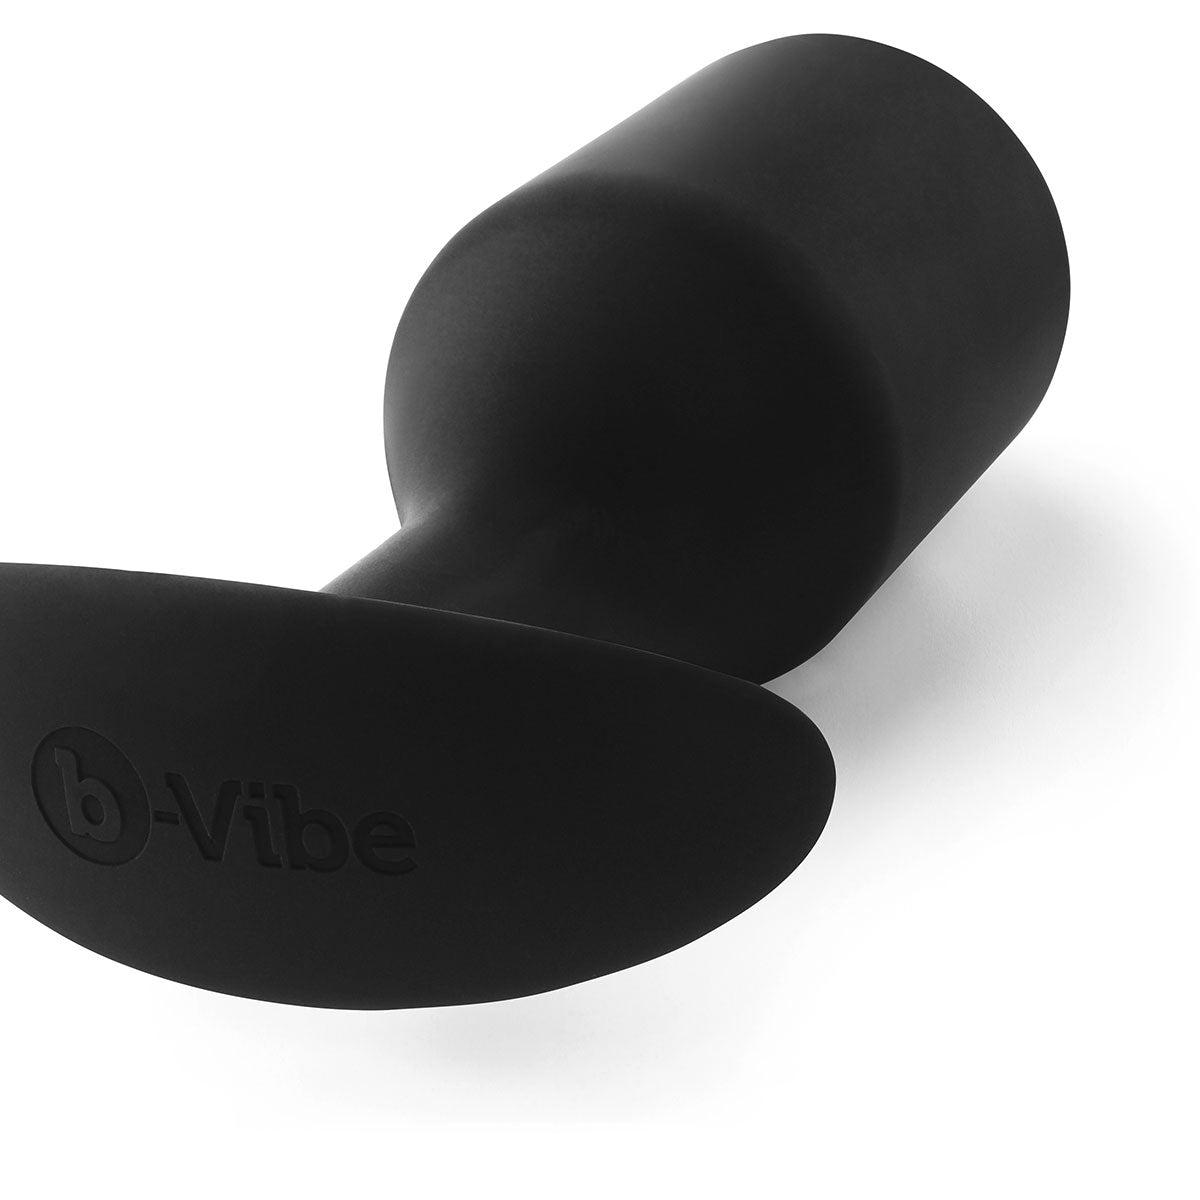 B-Vibe Snug Plug 6 (XXXL)Black – Intimates Adult Boutique Intimates Adult Boutique